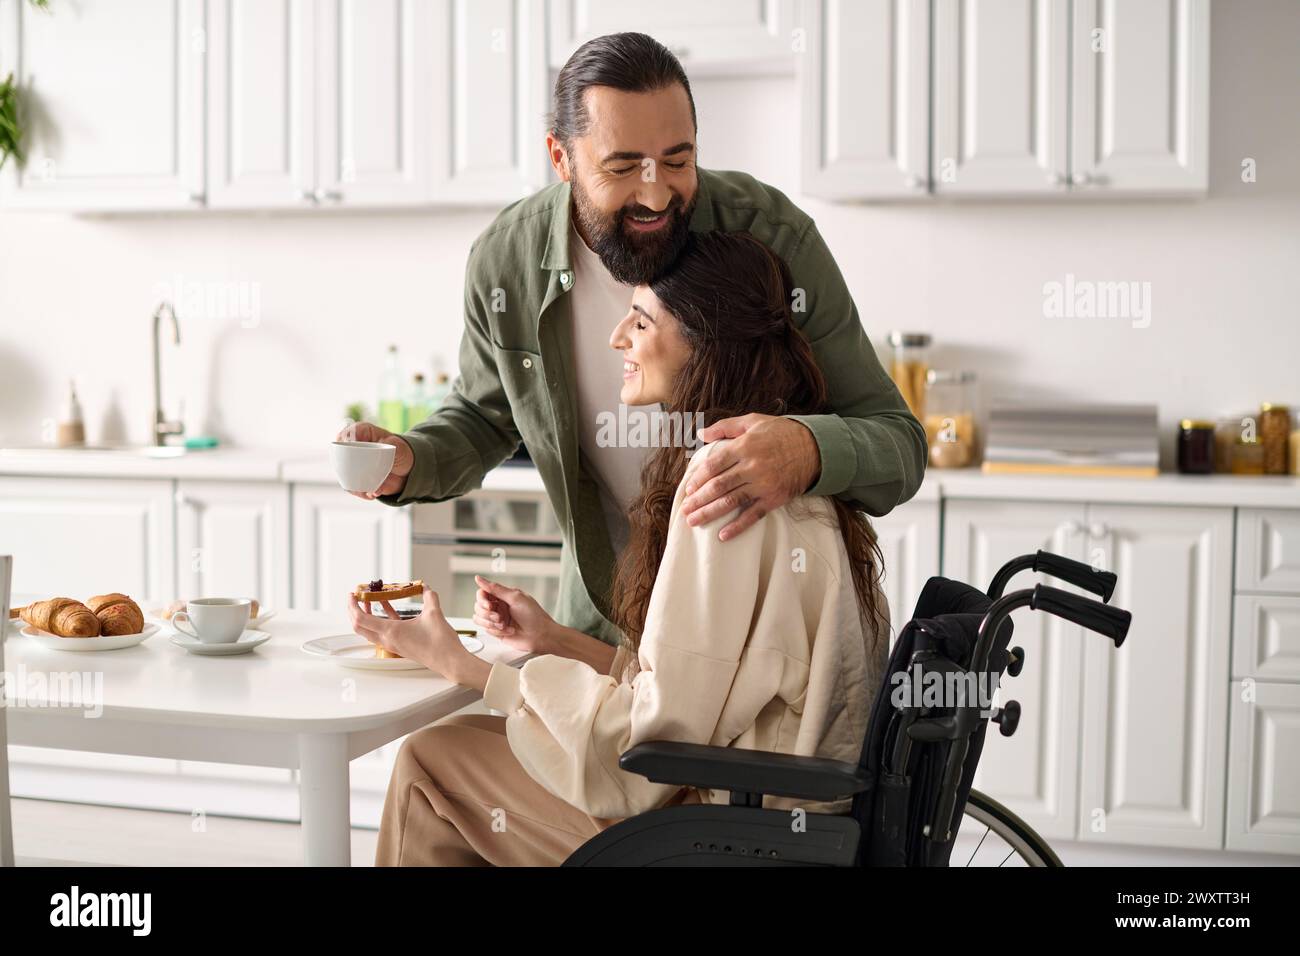 joyeuse femme attrayante avec un handicap en fauteuil roulant mangeant le petit déjeuner avec son mari aimant Banque D'Images